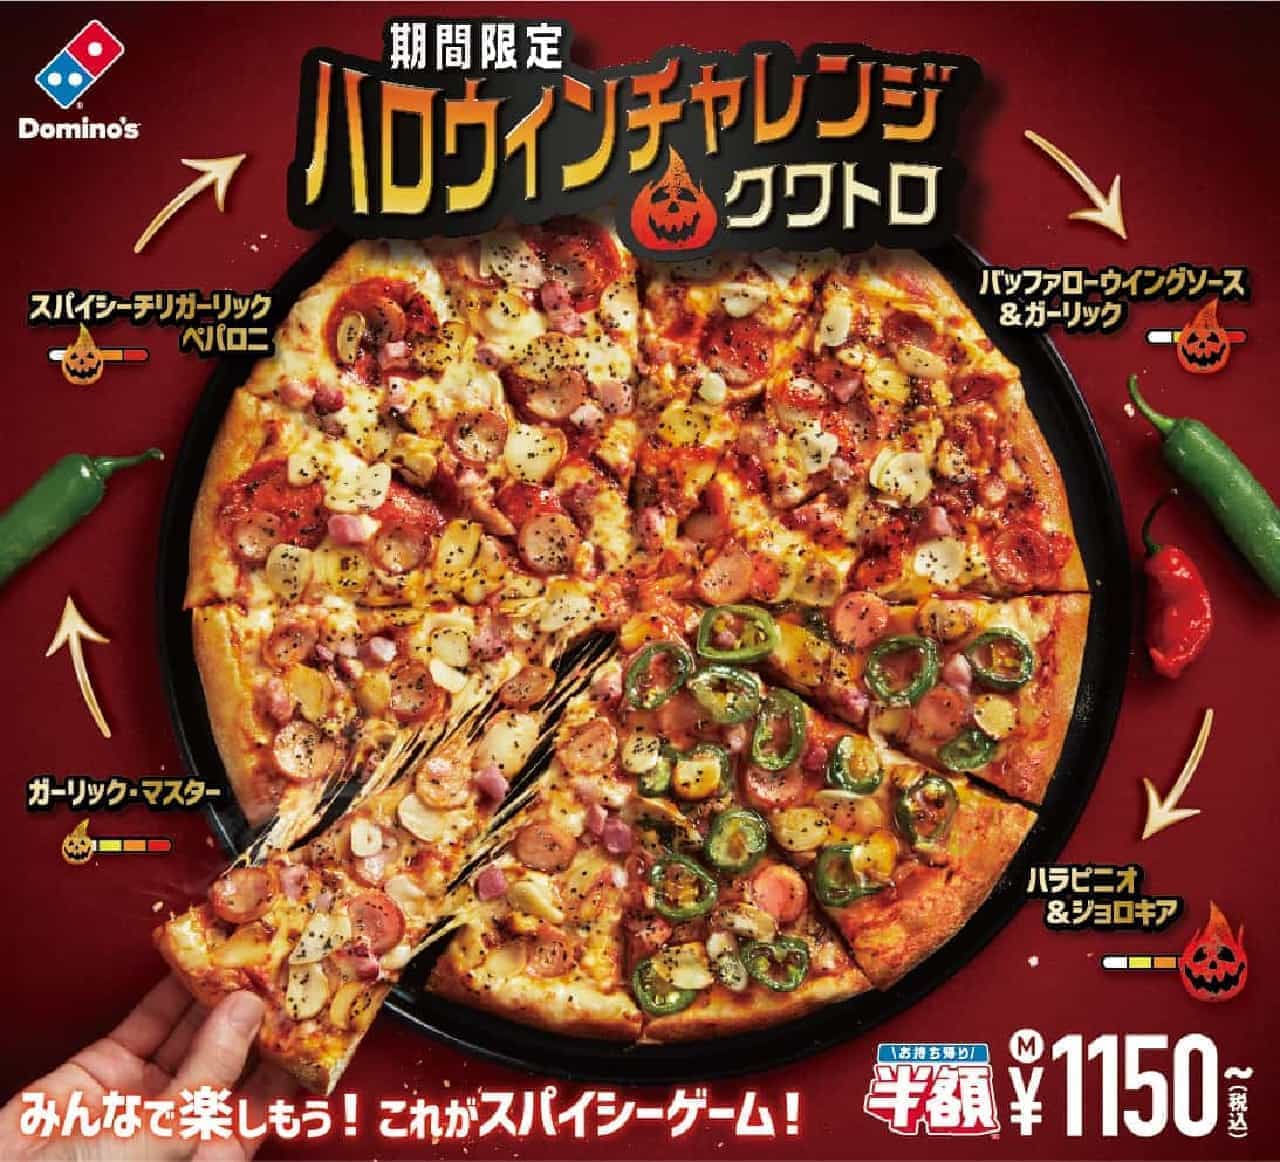 Domino's Pizza "Halloween Challenge Quattro"